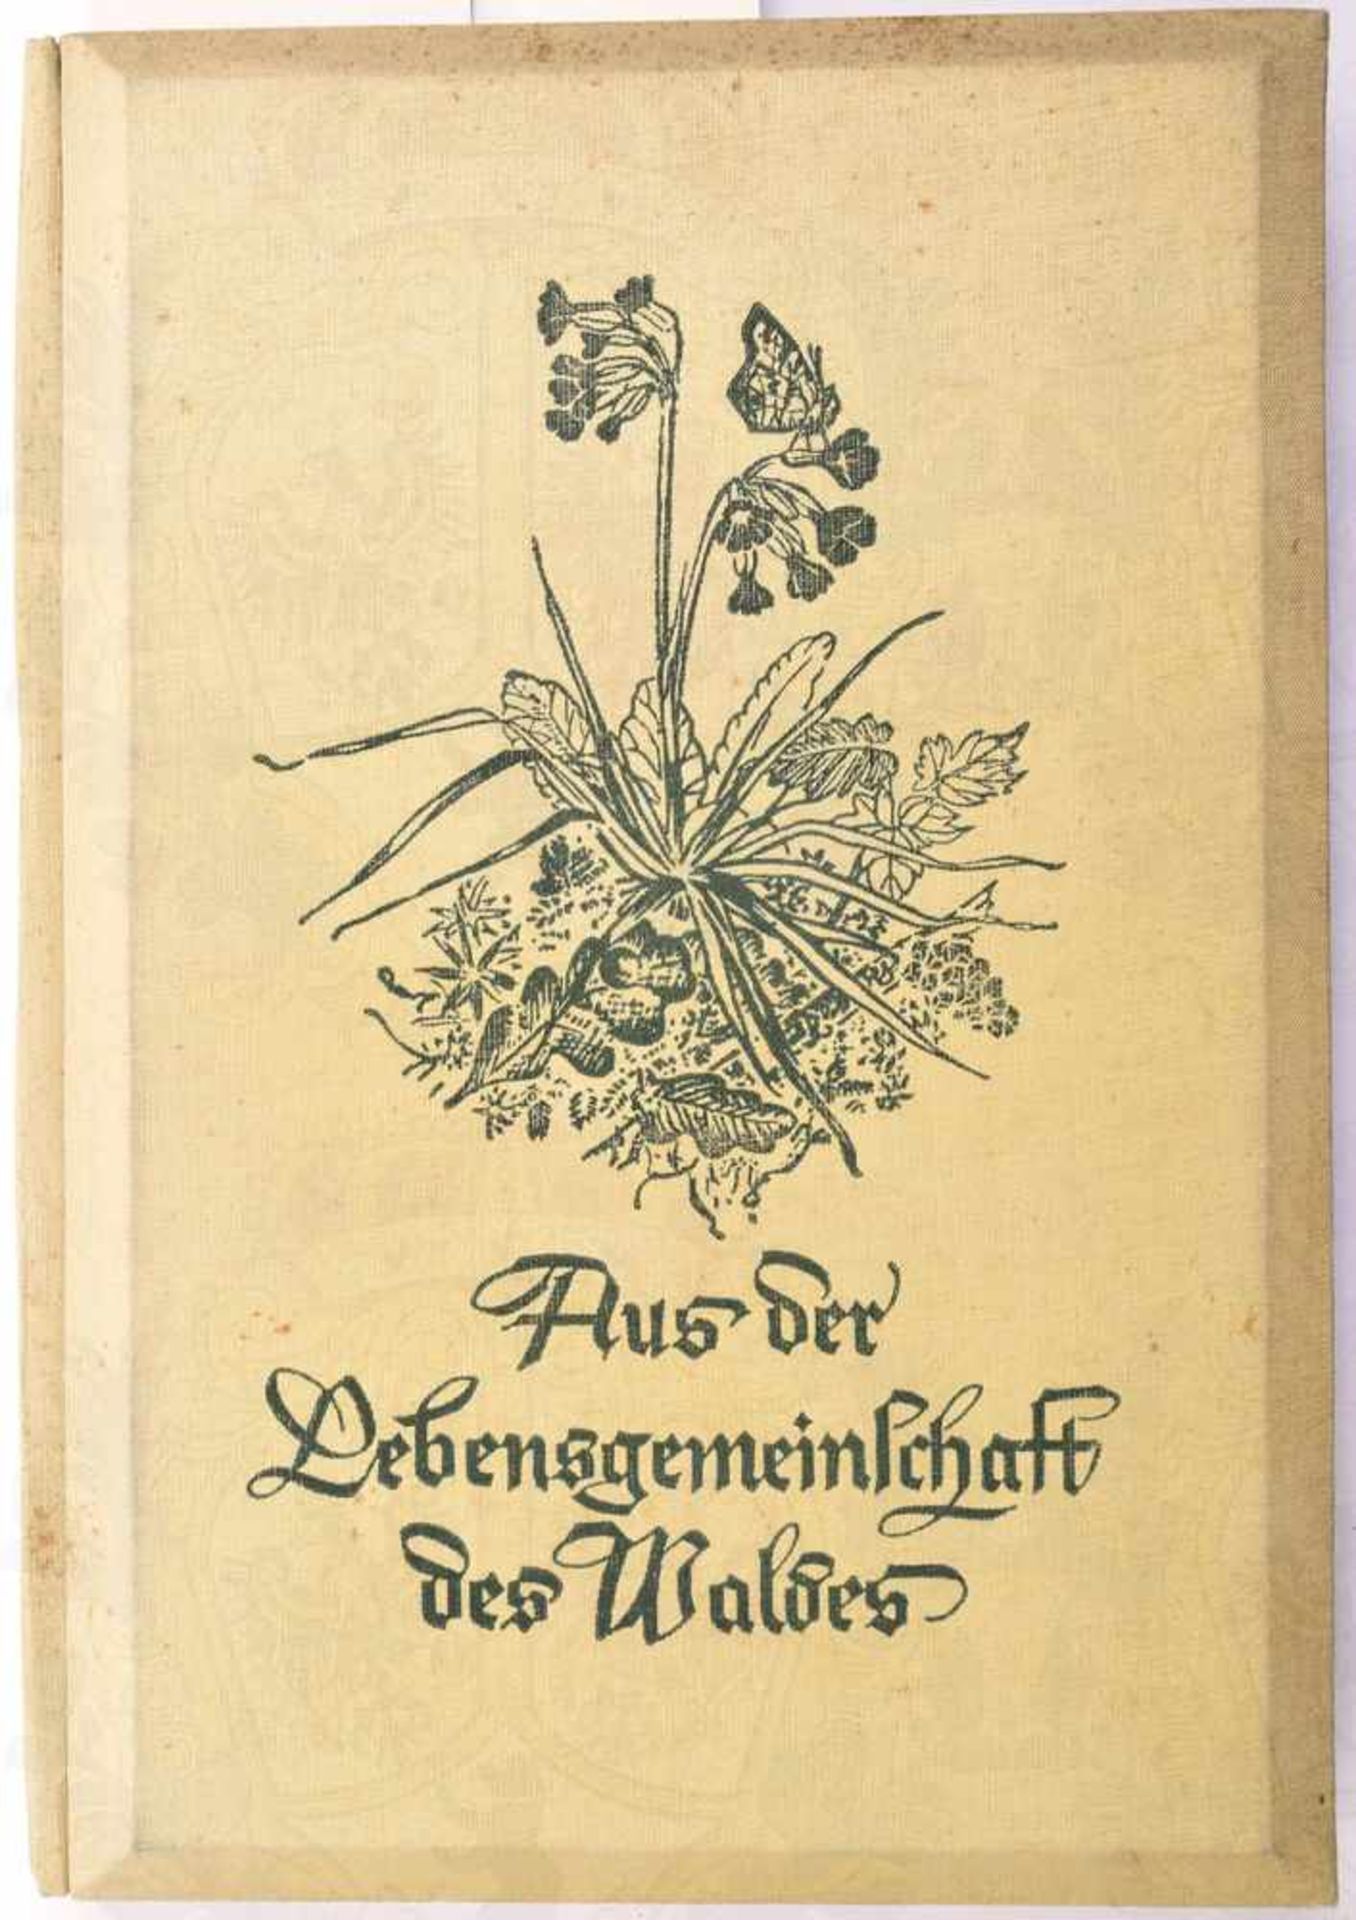 AUS DER LEBENSGEMEINSCHAFT DES WALDES, Schönstein Raumbild-Verlag, München 1939, 120 S., 150 Bilder,